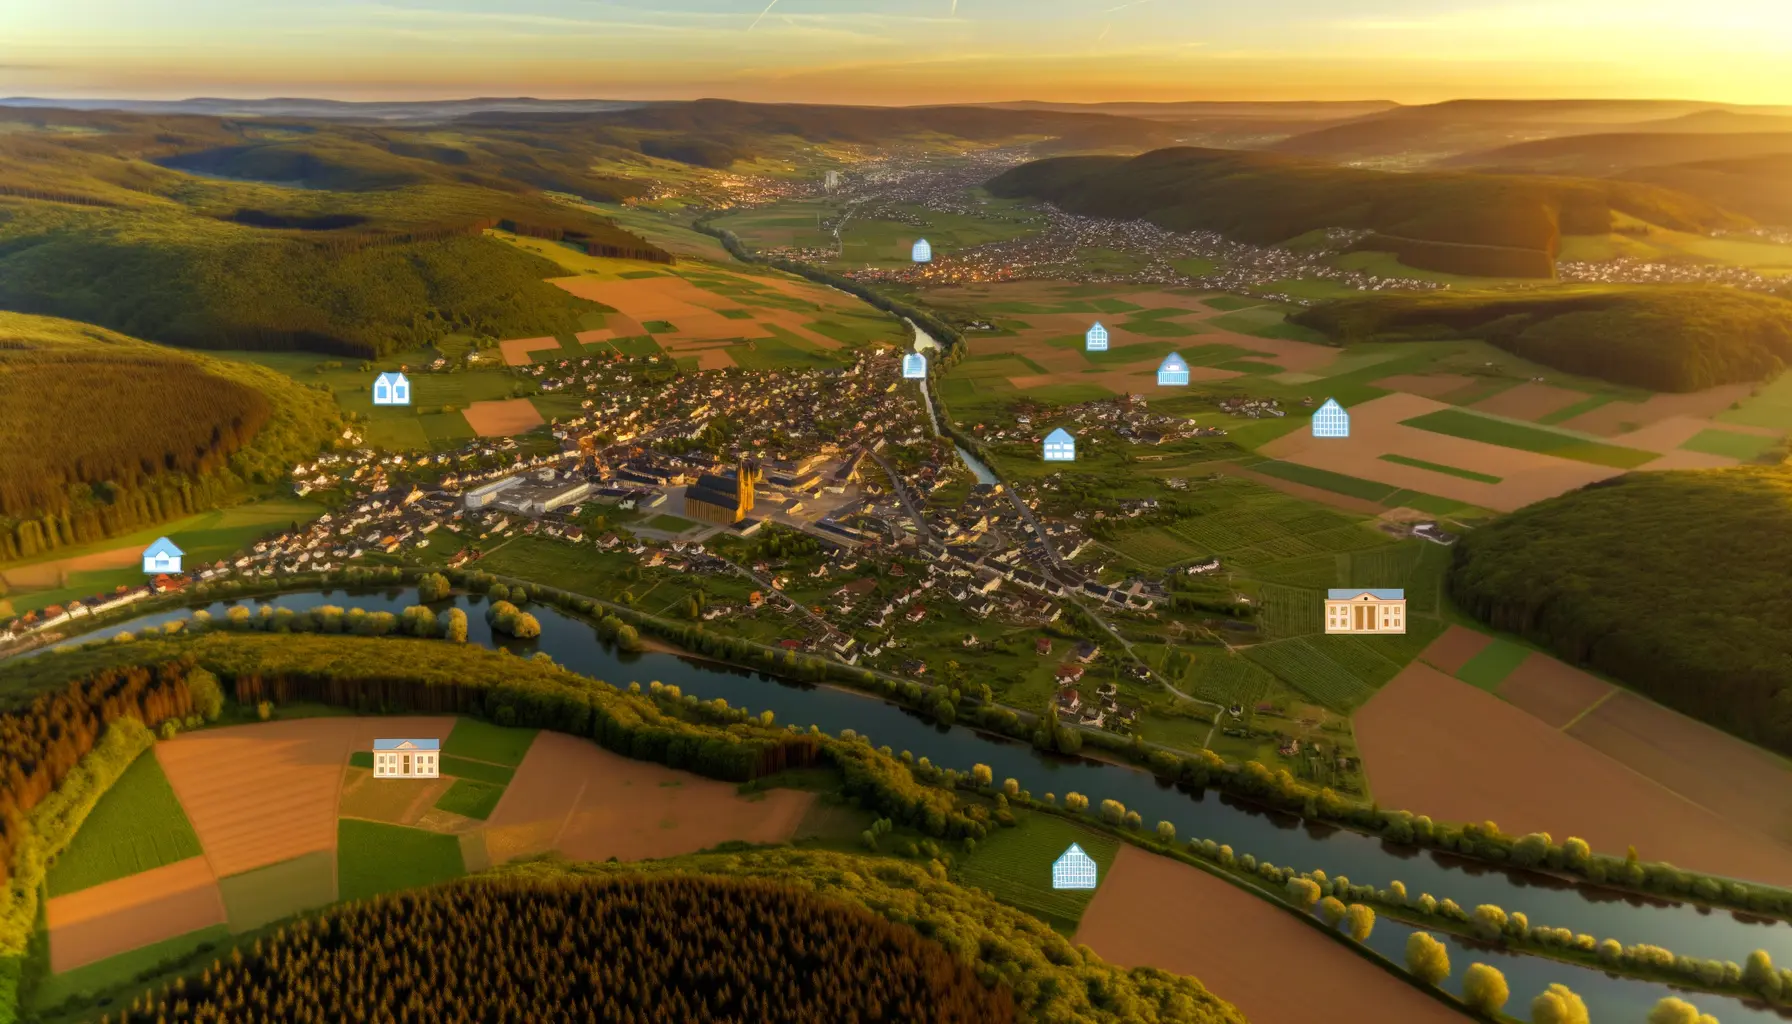 Luftaufnahme eines Landkreises in Rheinland-Pfalz bei Sonnenuntergang